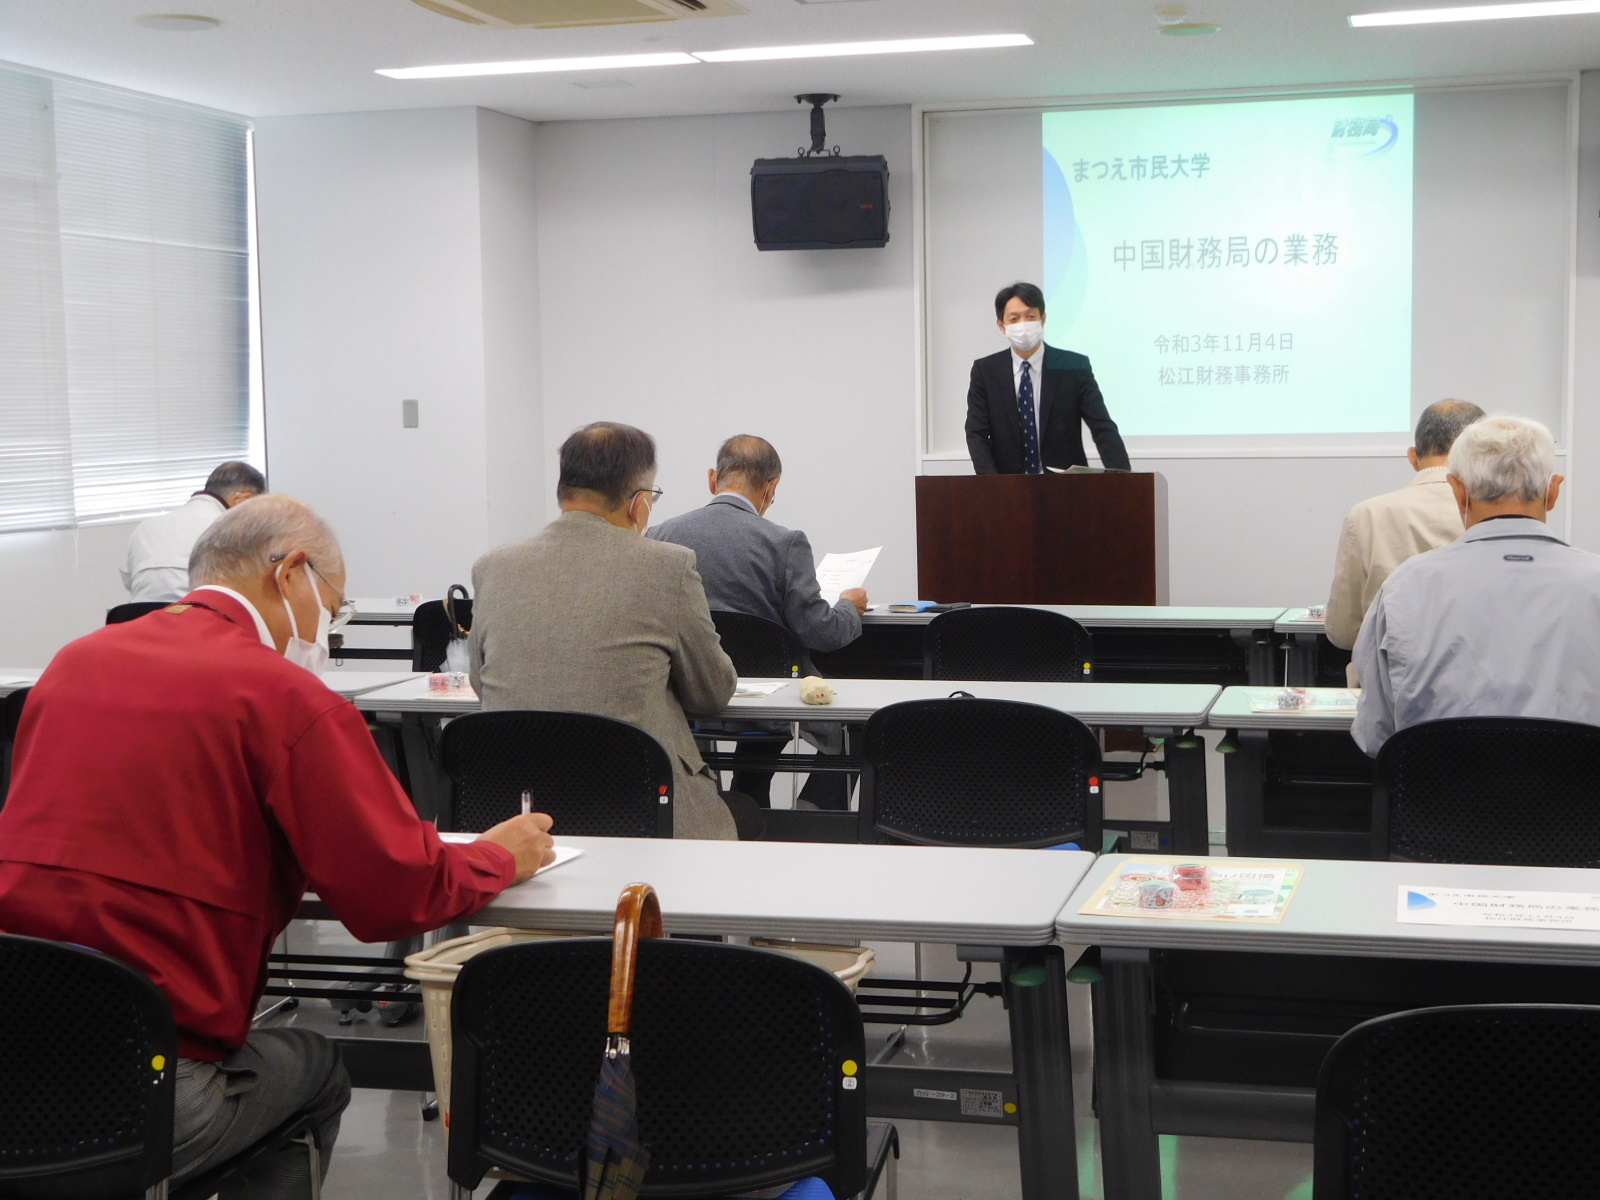 松江市民大学での講義の様子